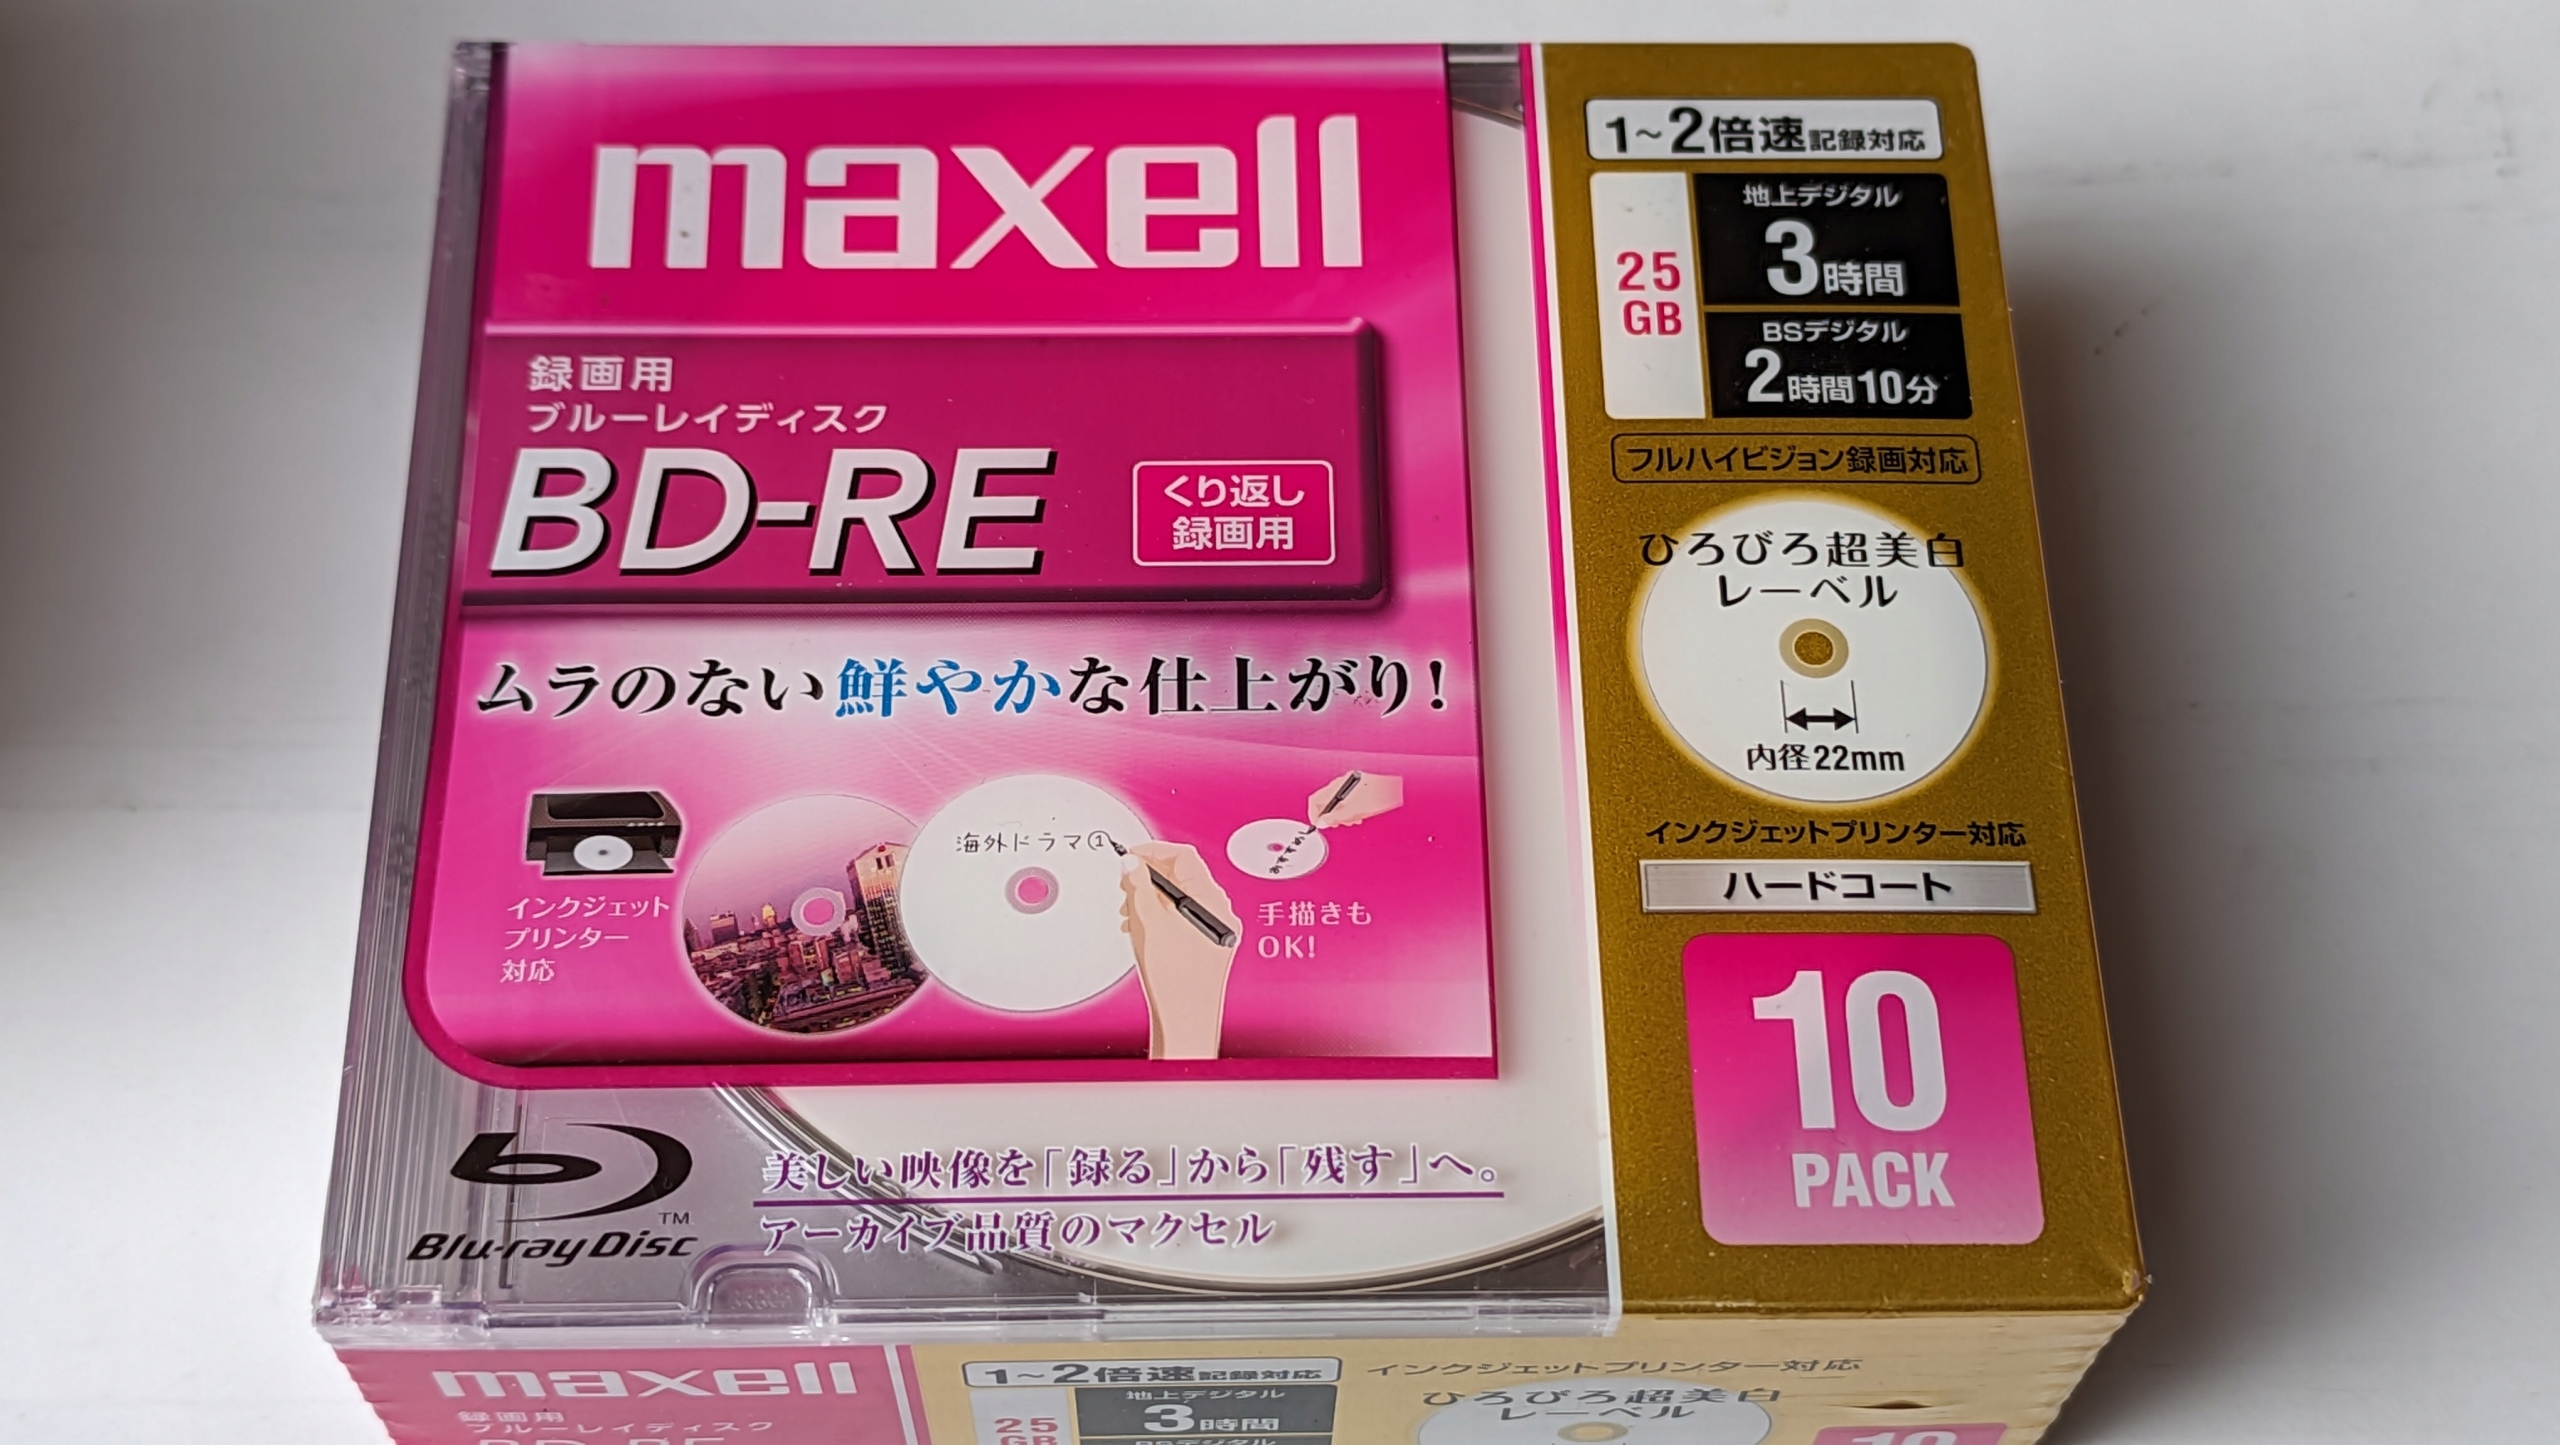 Maxell Bd-re 25GB Printable-vícenásobné uložení 10ks=10pack